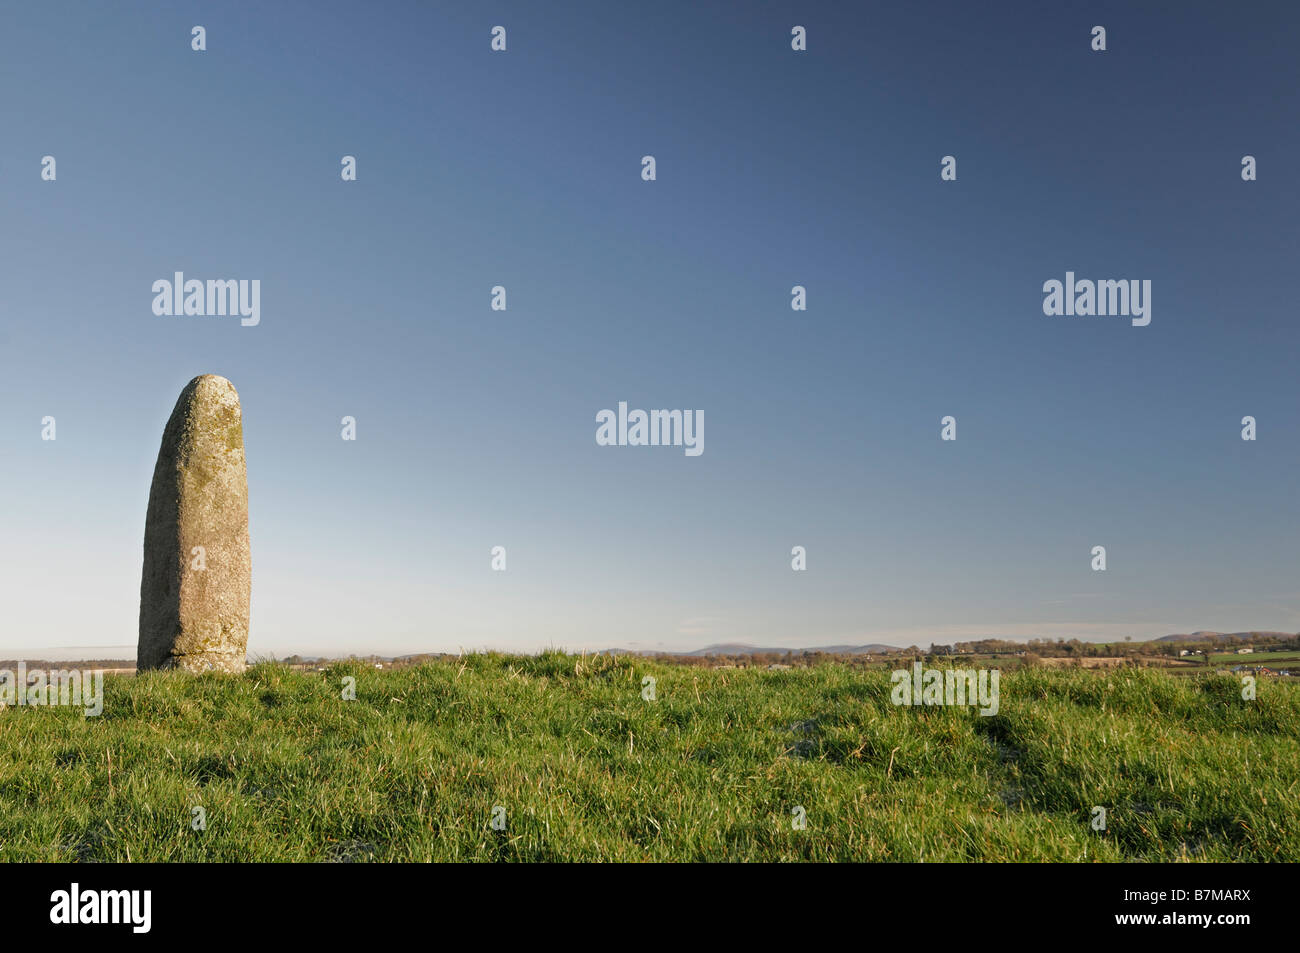 Kilgowen permanente tumulo di pietra monolito di granito in cima esker permanente di Kildare Irlanda cielo blu Foto Stock